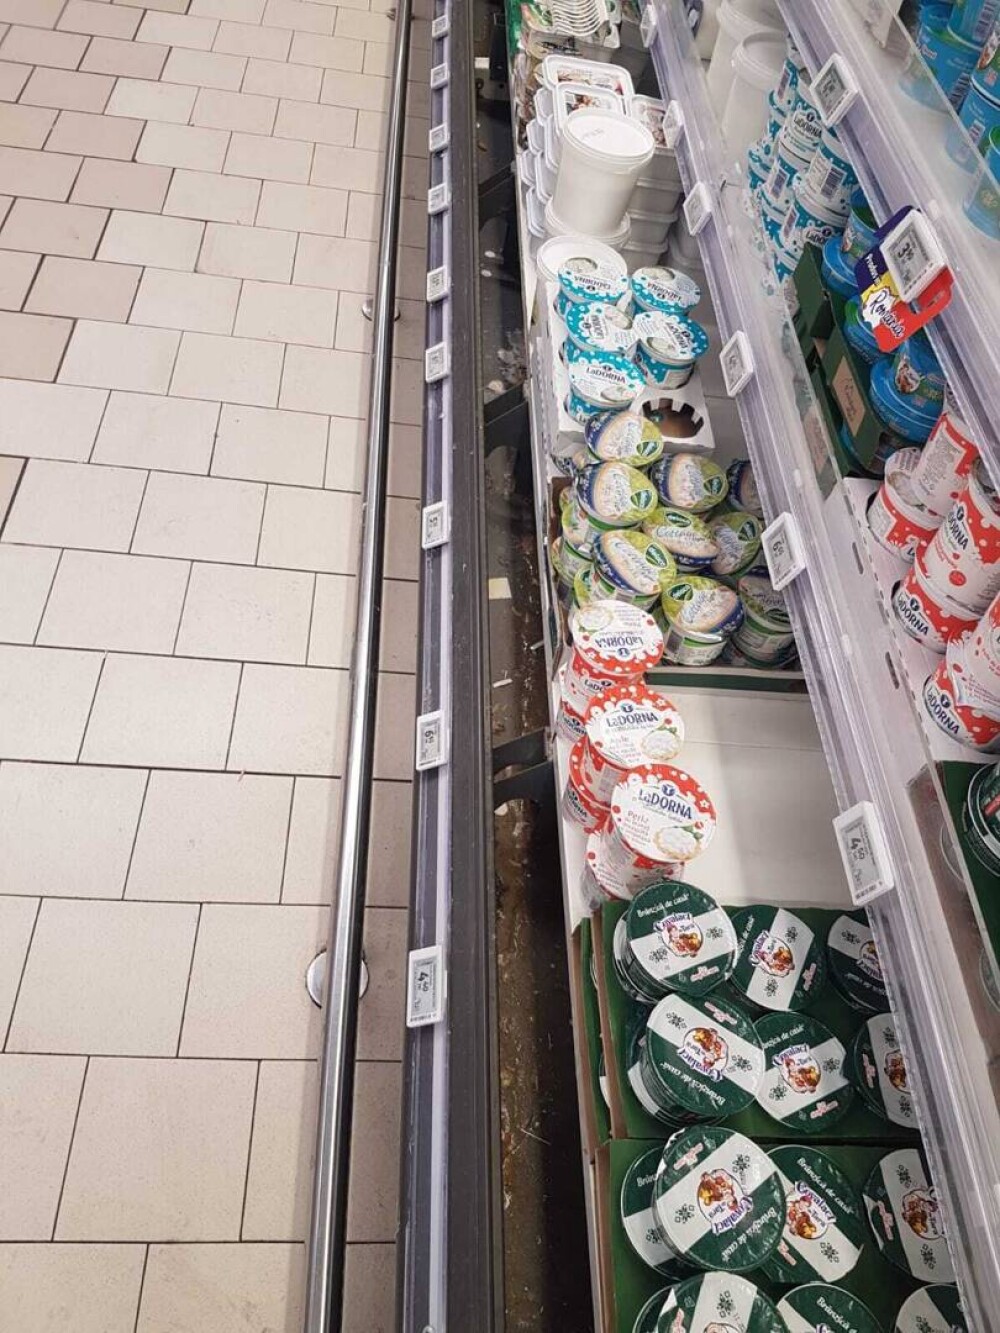 ANPC propune închiderea a patru hipermarketuri Auchan din Capitală. Controlul a scos la iveală abateri importante - Imaginea 7